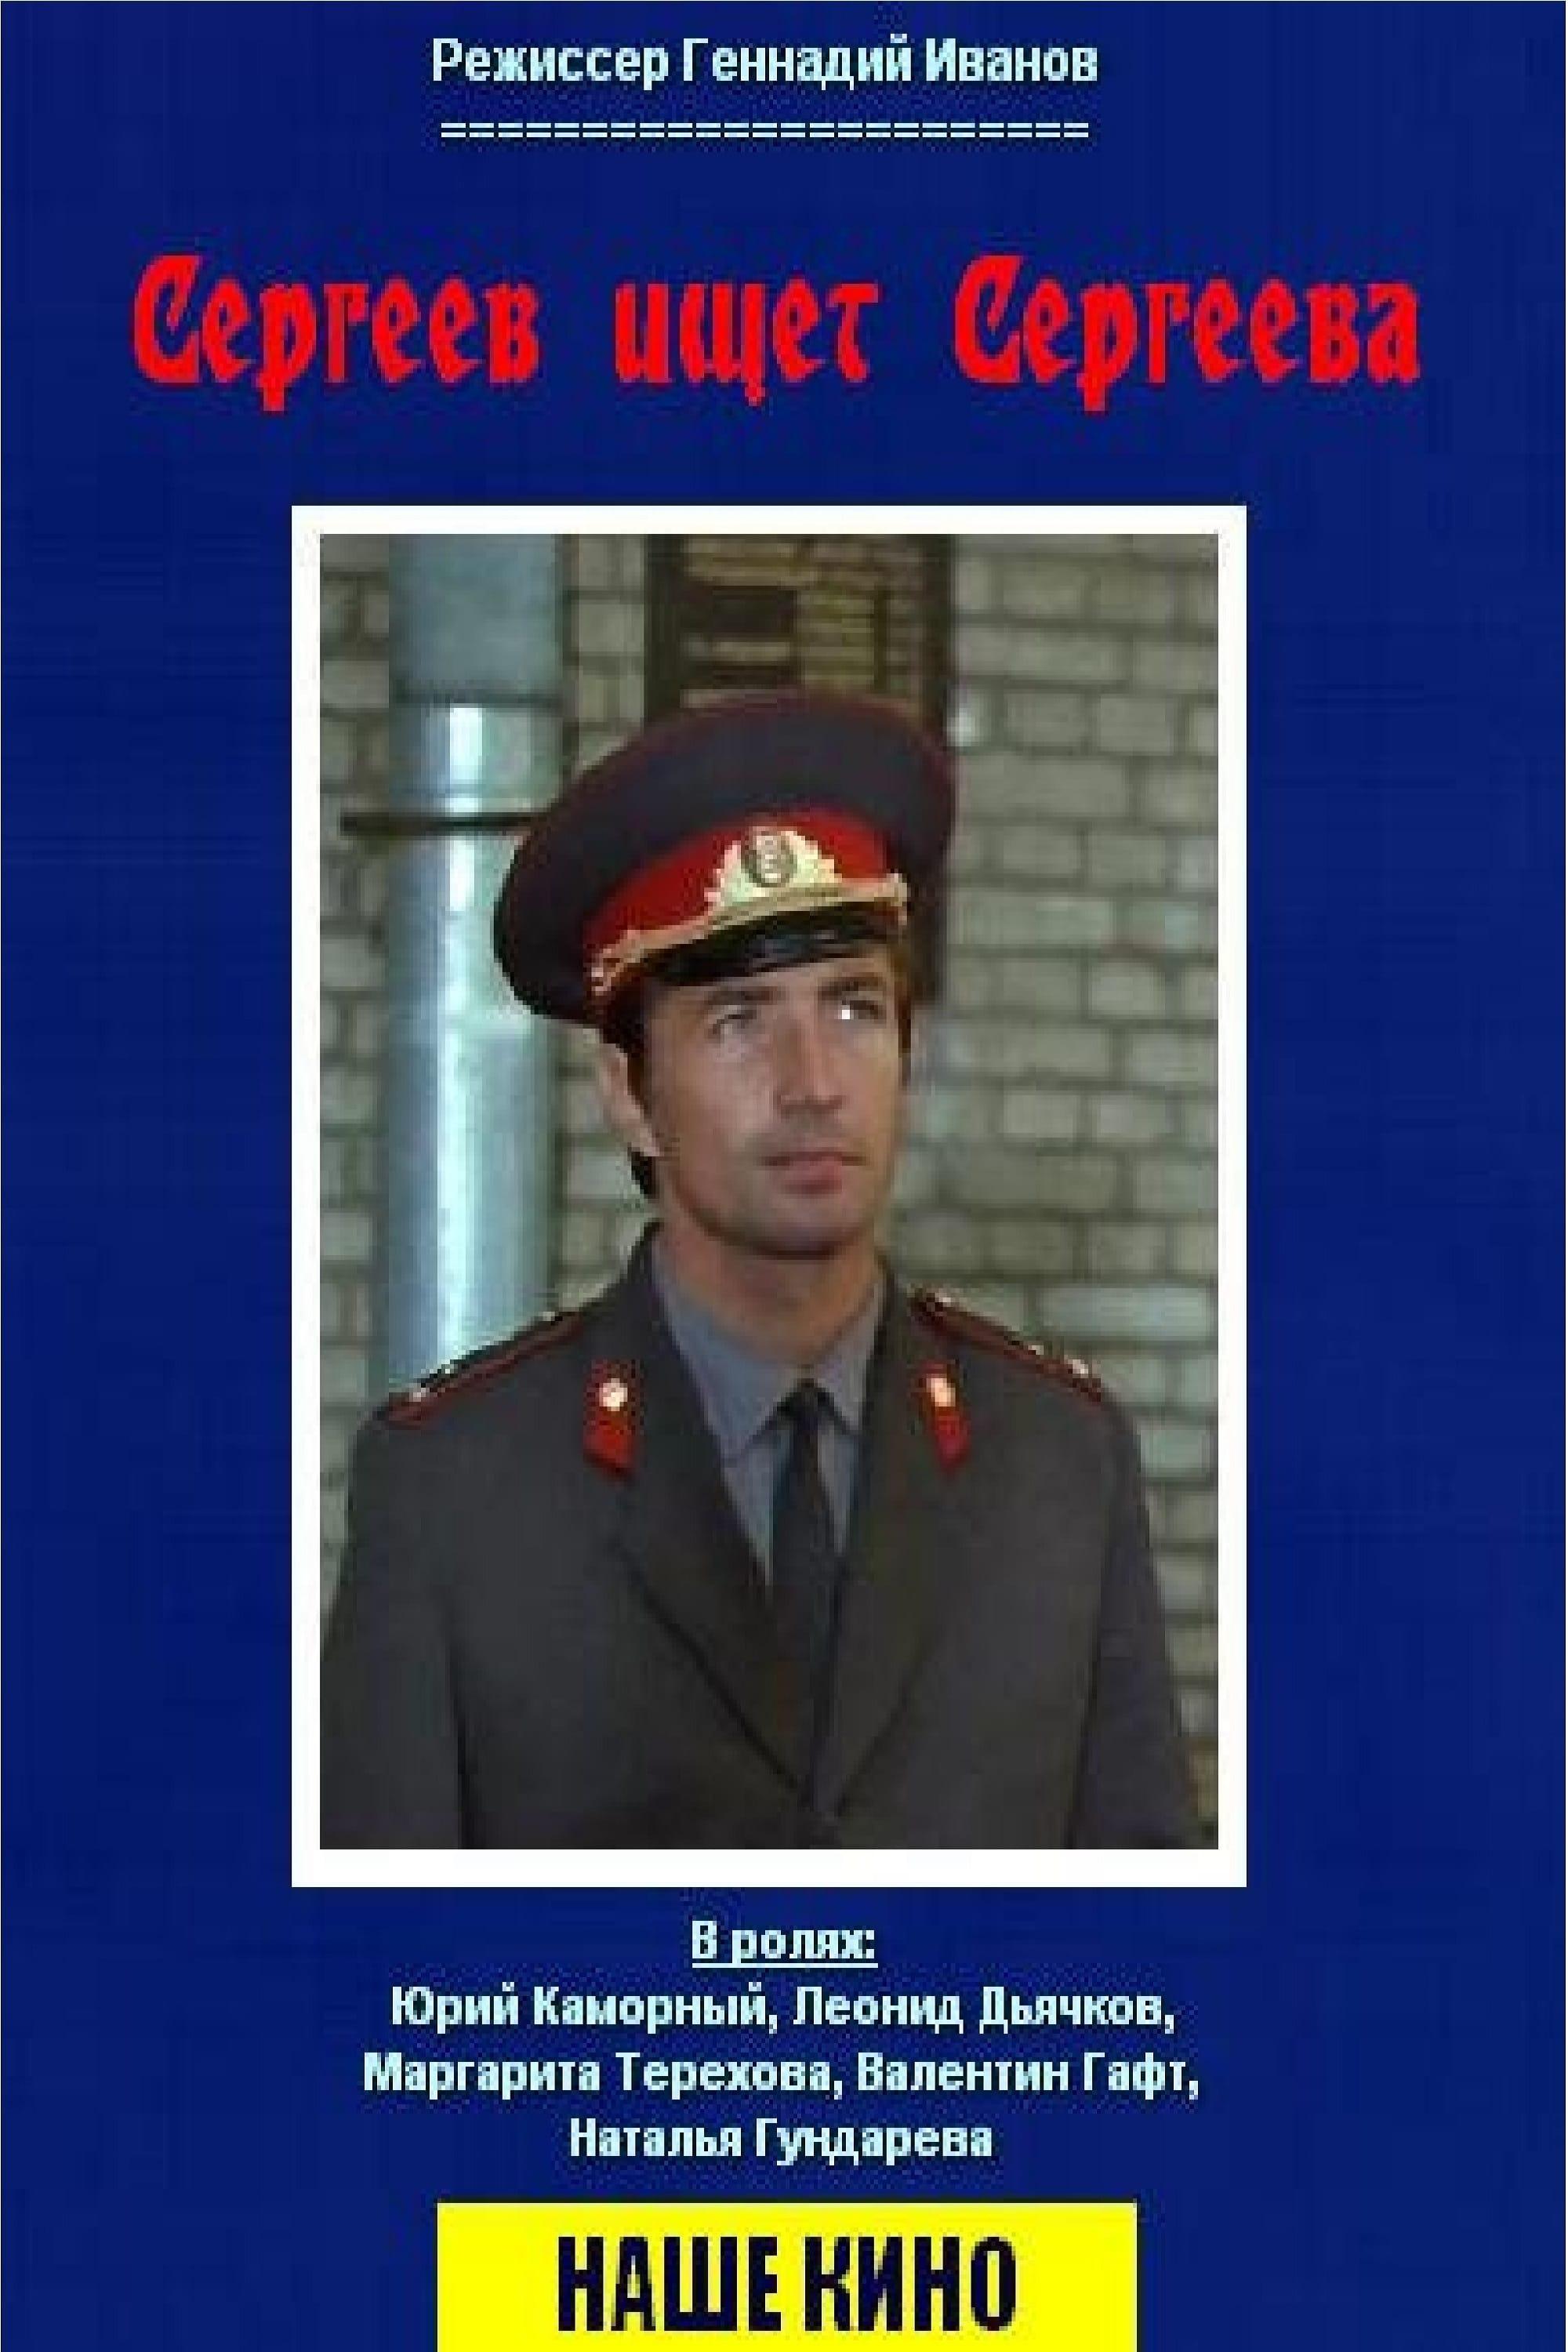 Сергеев ищет Сергеева poster